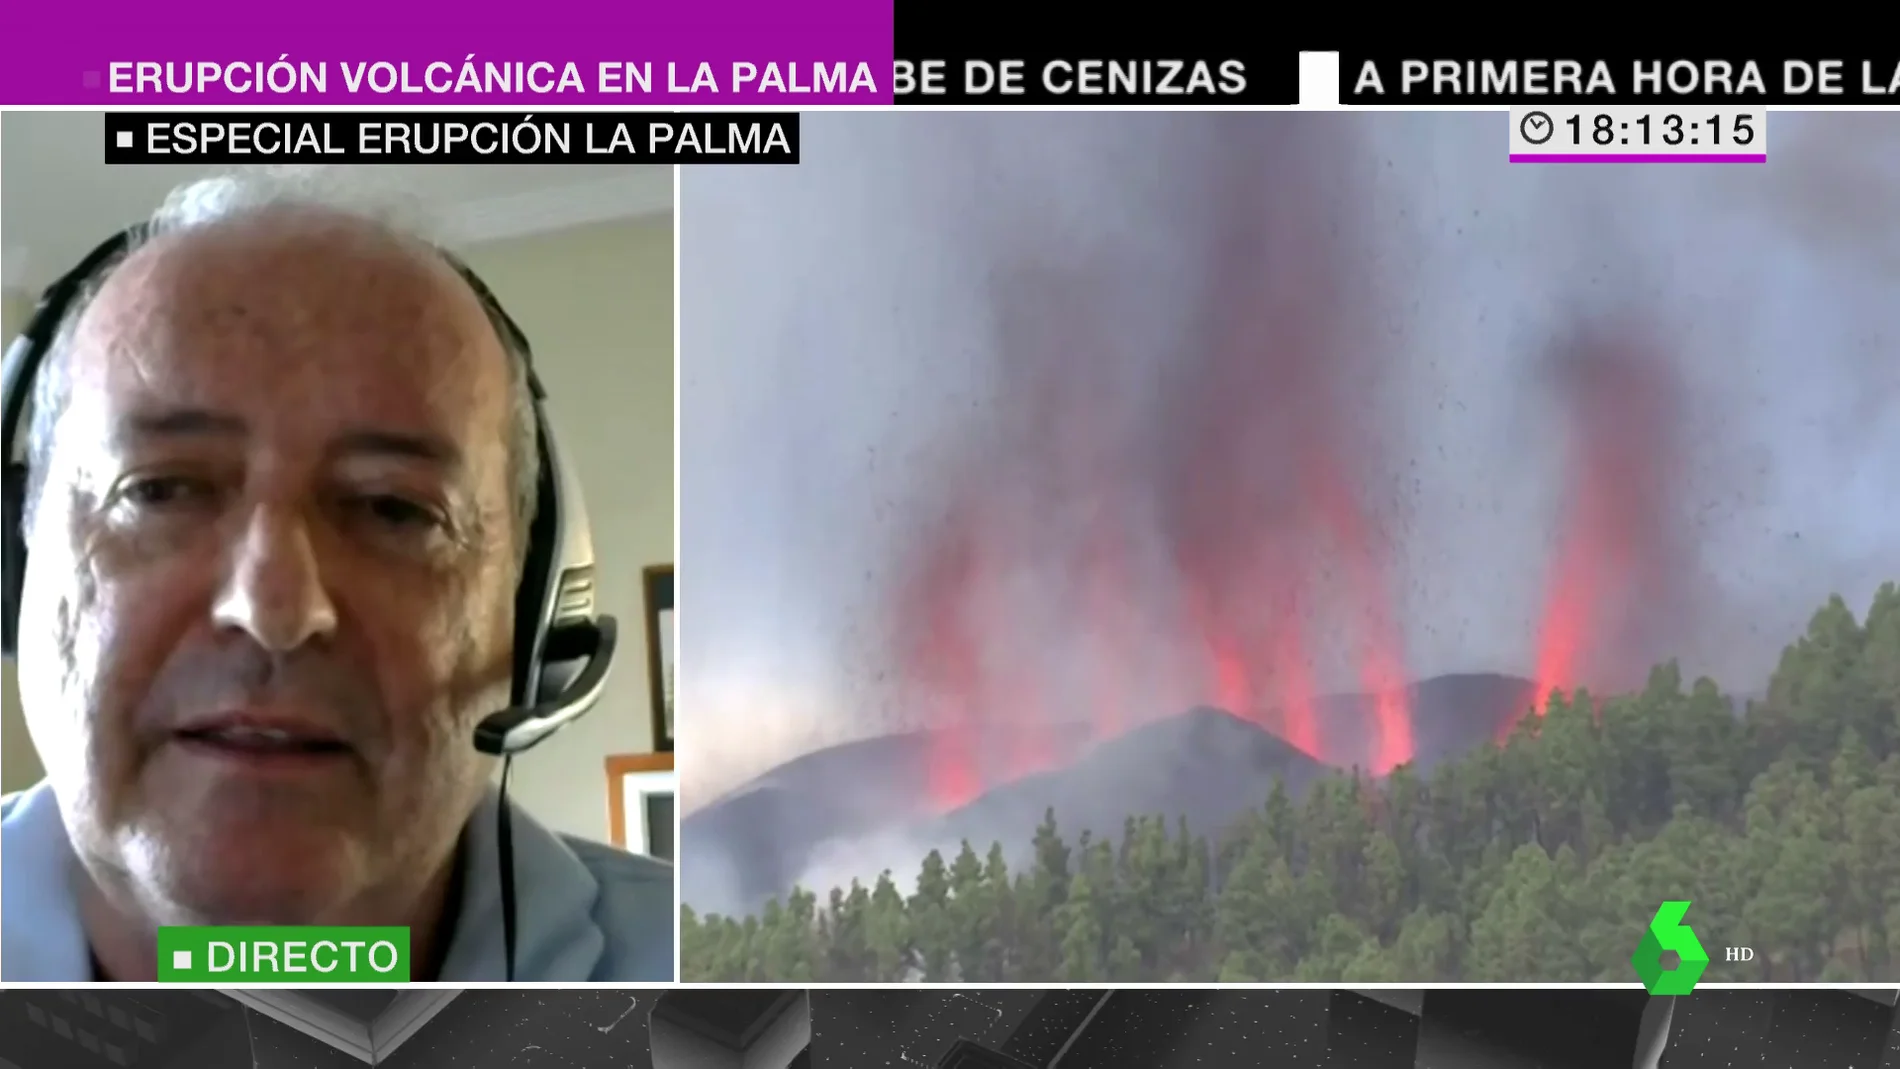 Un sismólogo volcánico avisa de los riesgos de una erupción como la de La Palma: "Es una situación crítica"